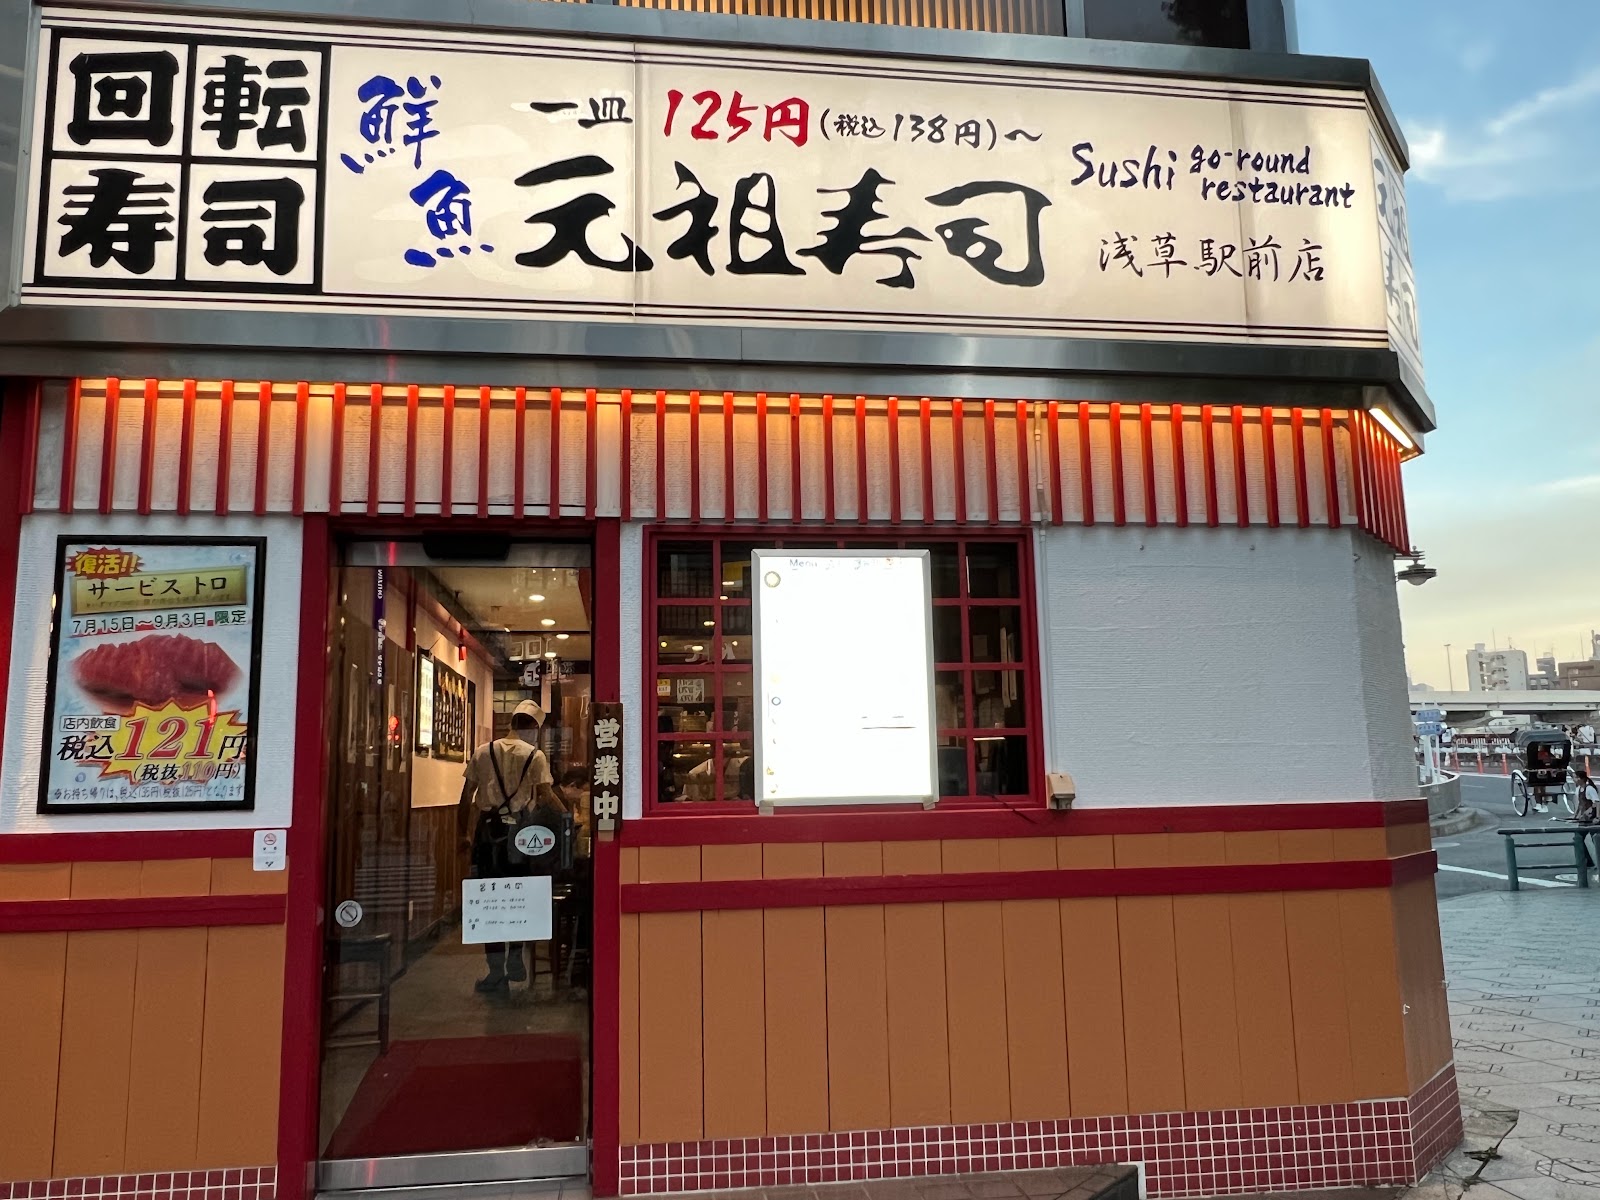 元祖寿司 浅草駅前店の風景